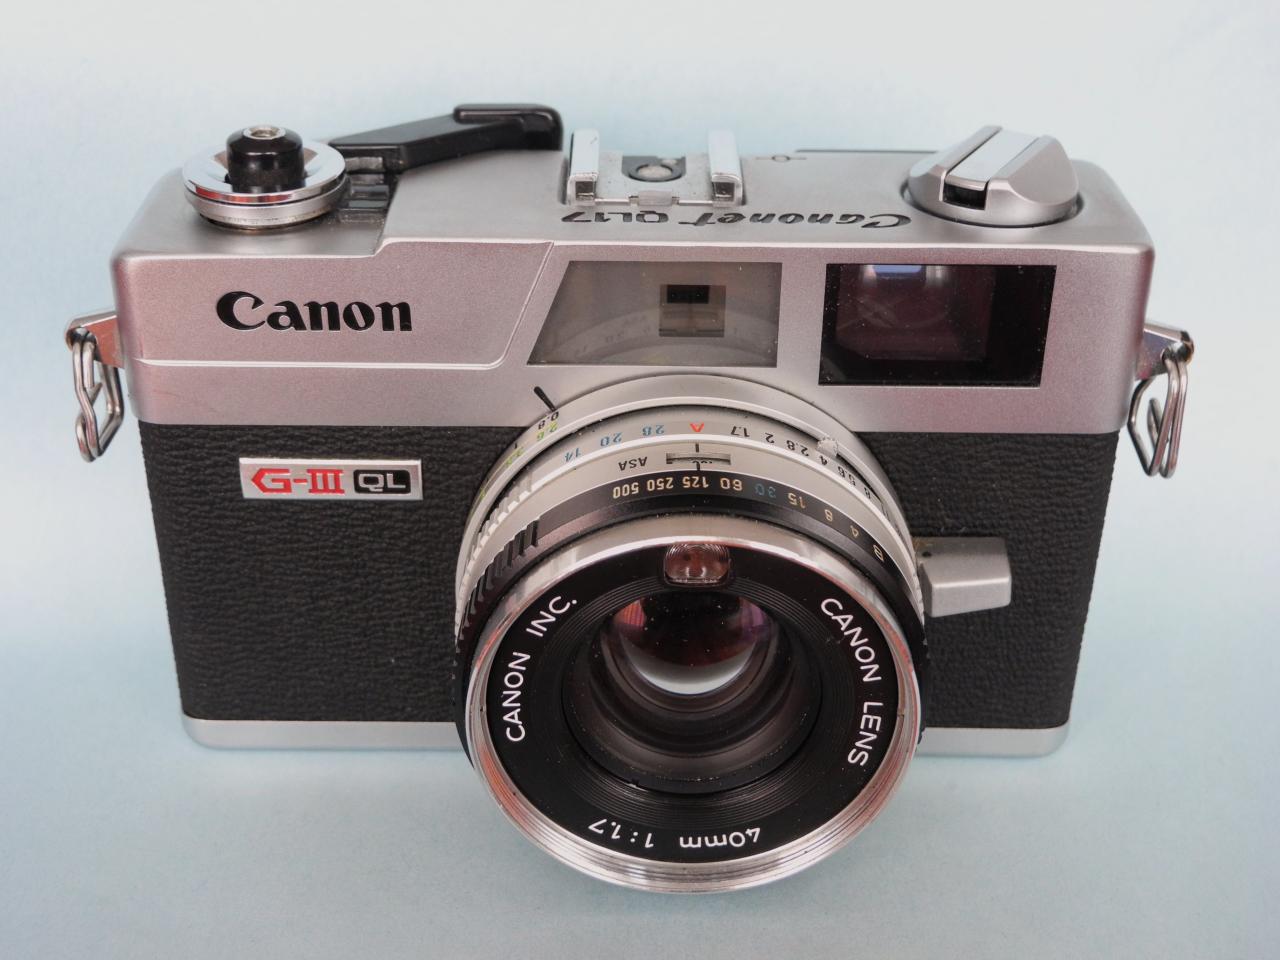 *Canonet G-III QL17 1974 film 135*